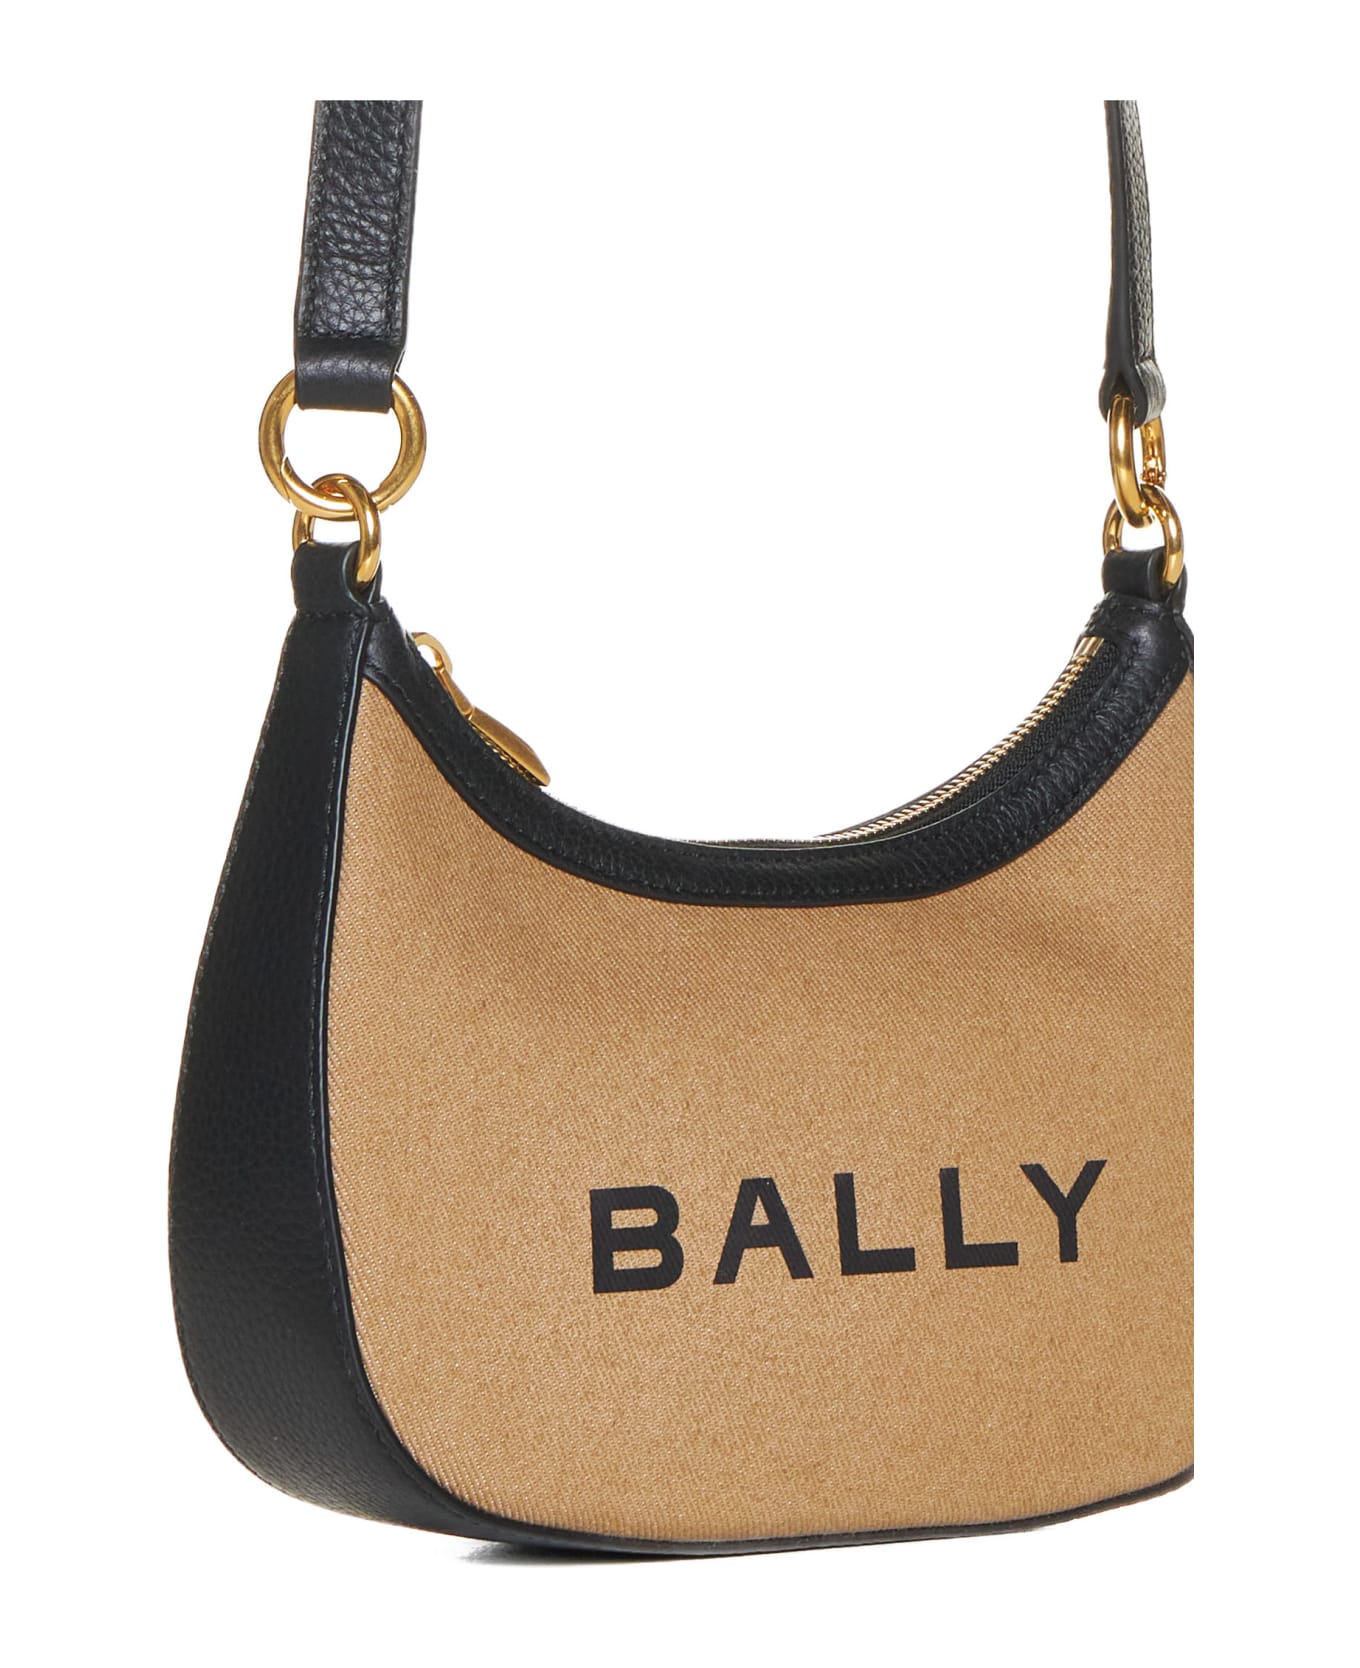 Bally Shoulder Bag - Sand/black+oro